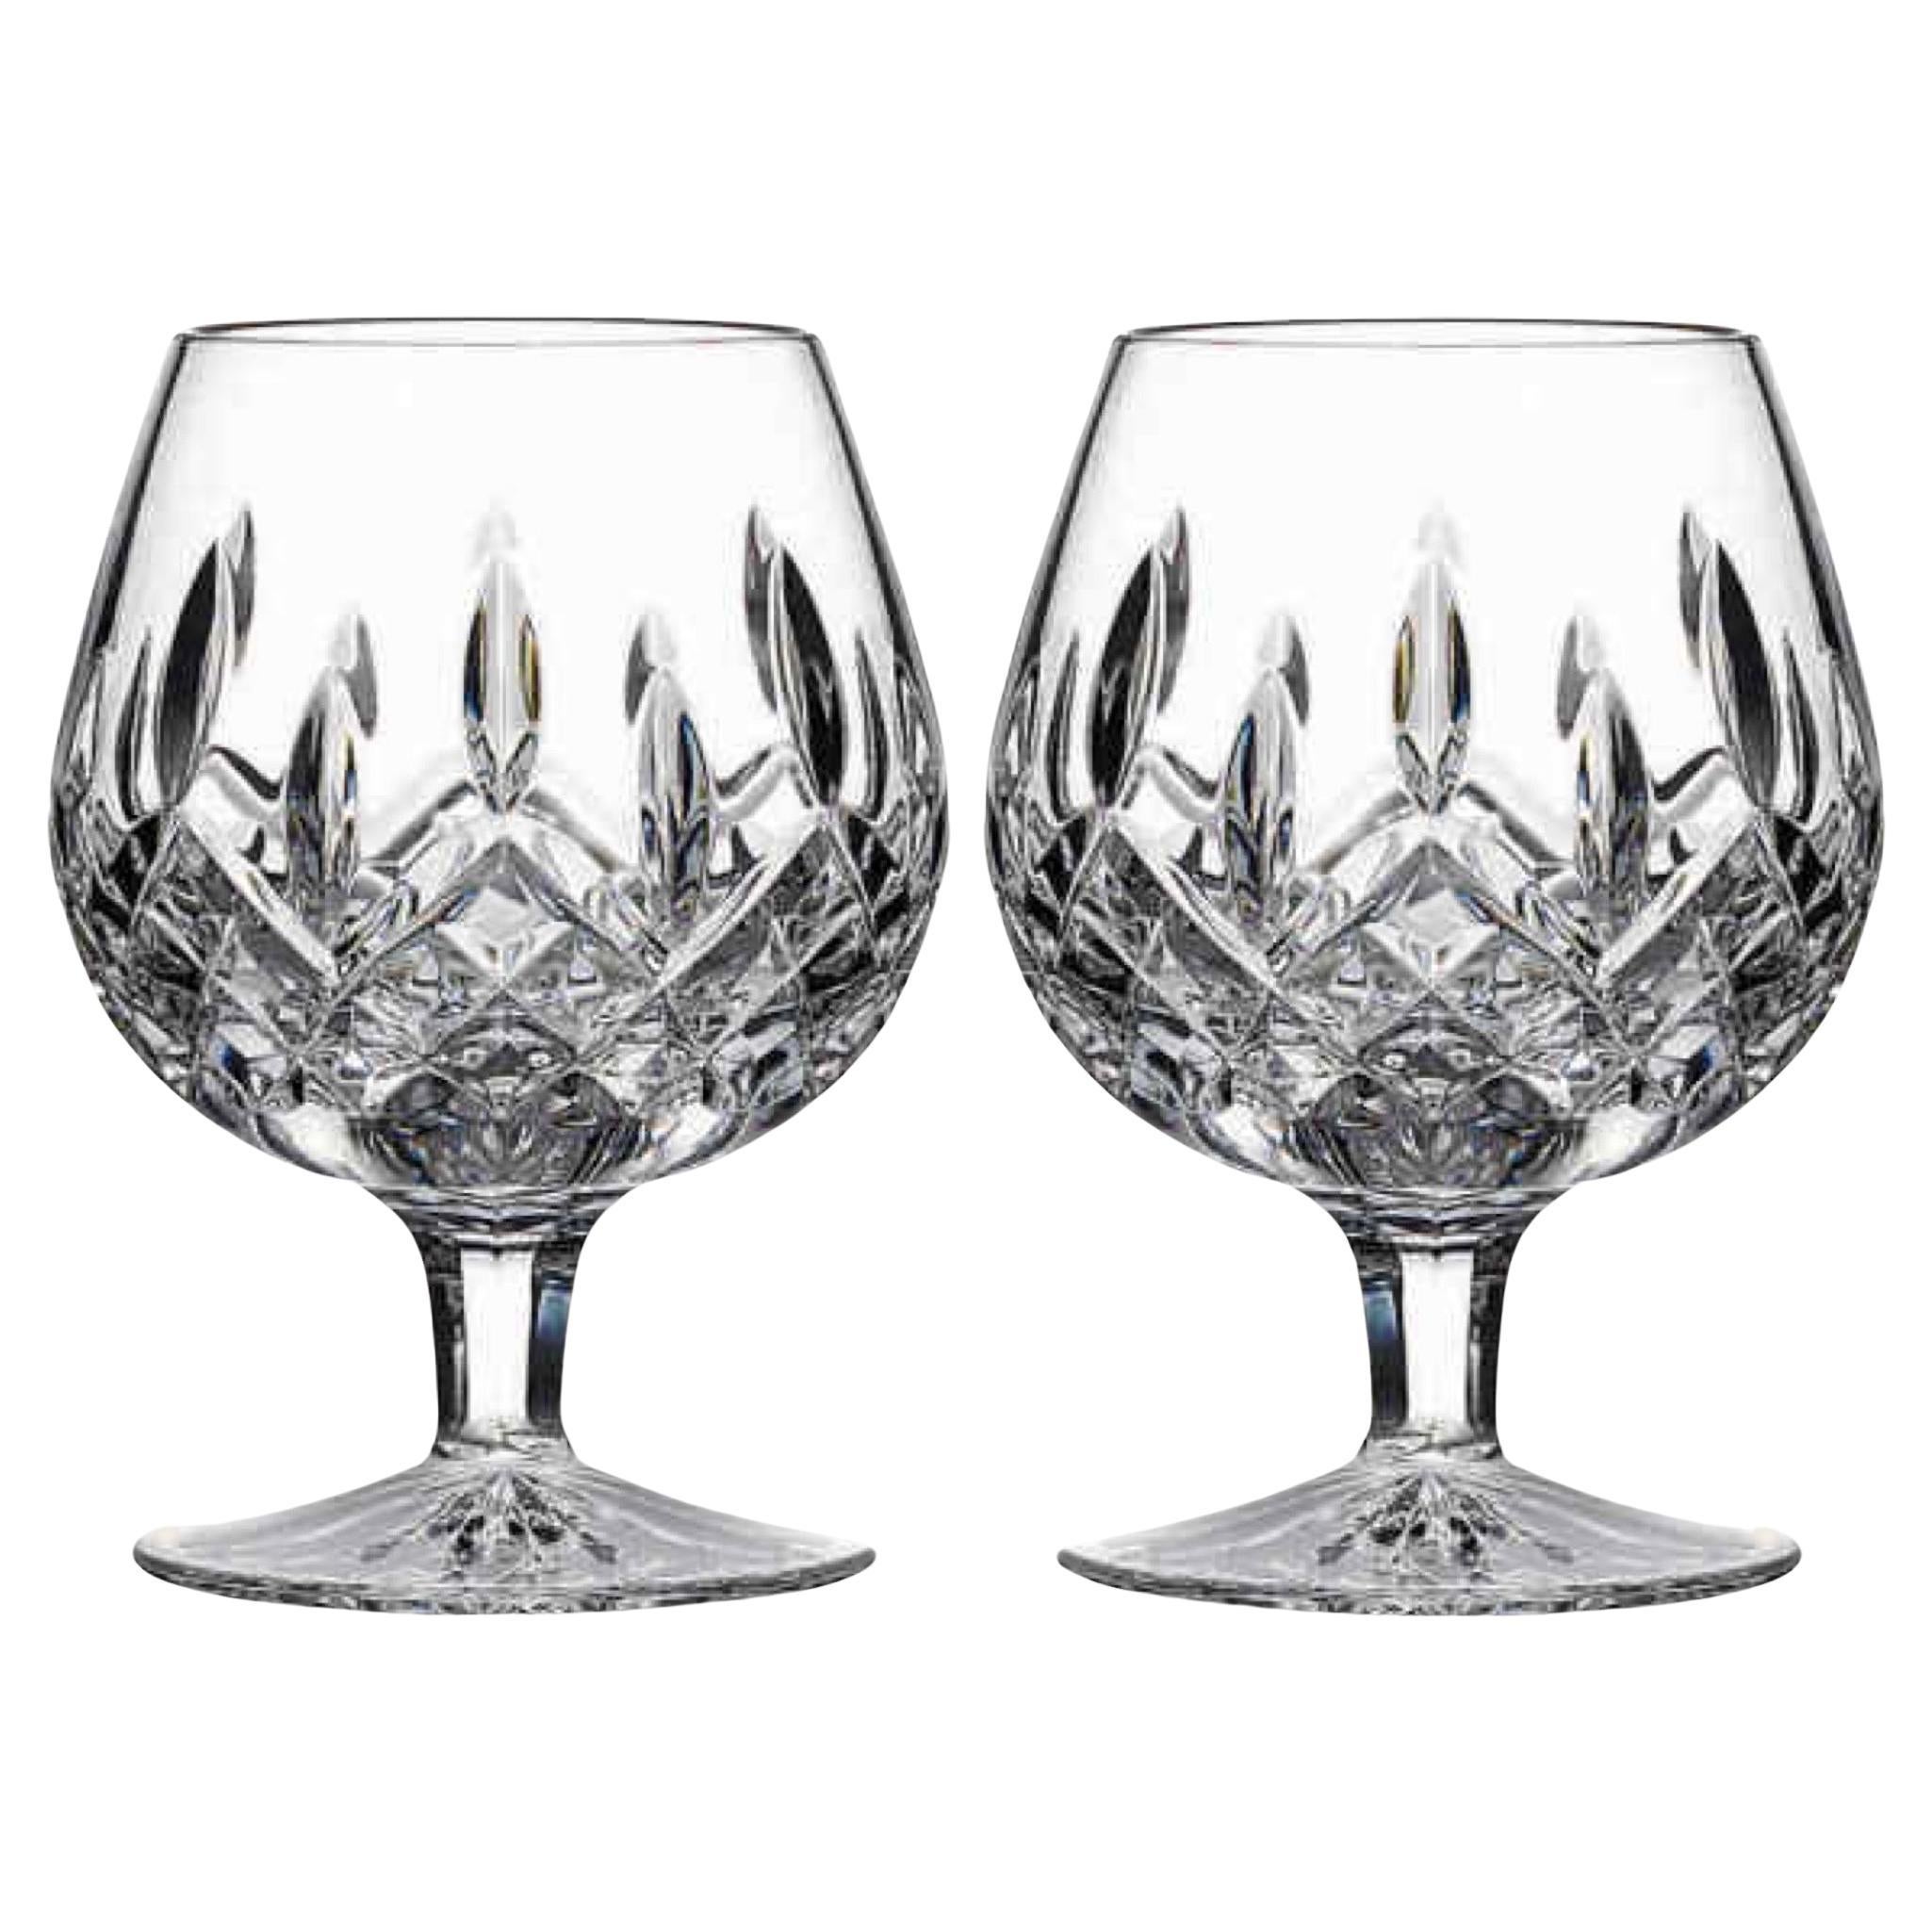 Pair of Vintage Cut Crystal Brandy Glasses by Waterford Crystal, c. 1980's